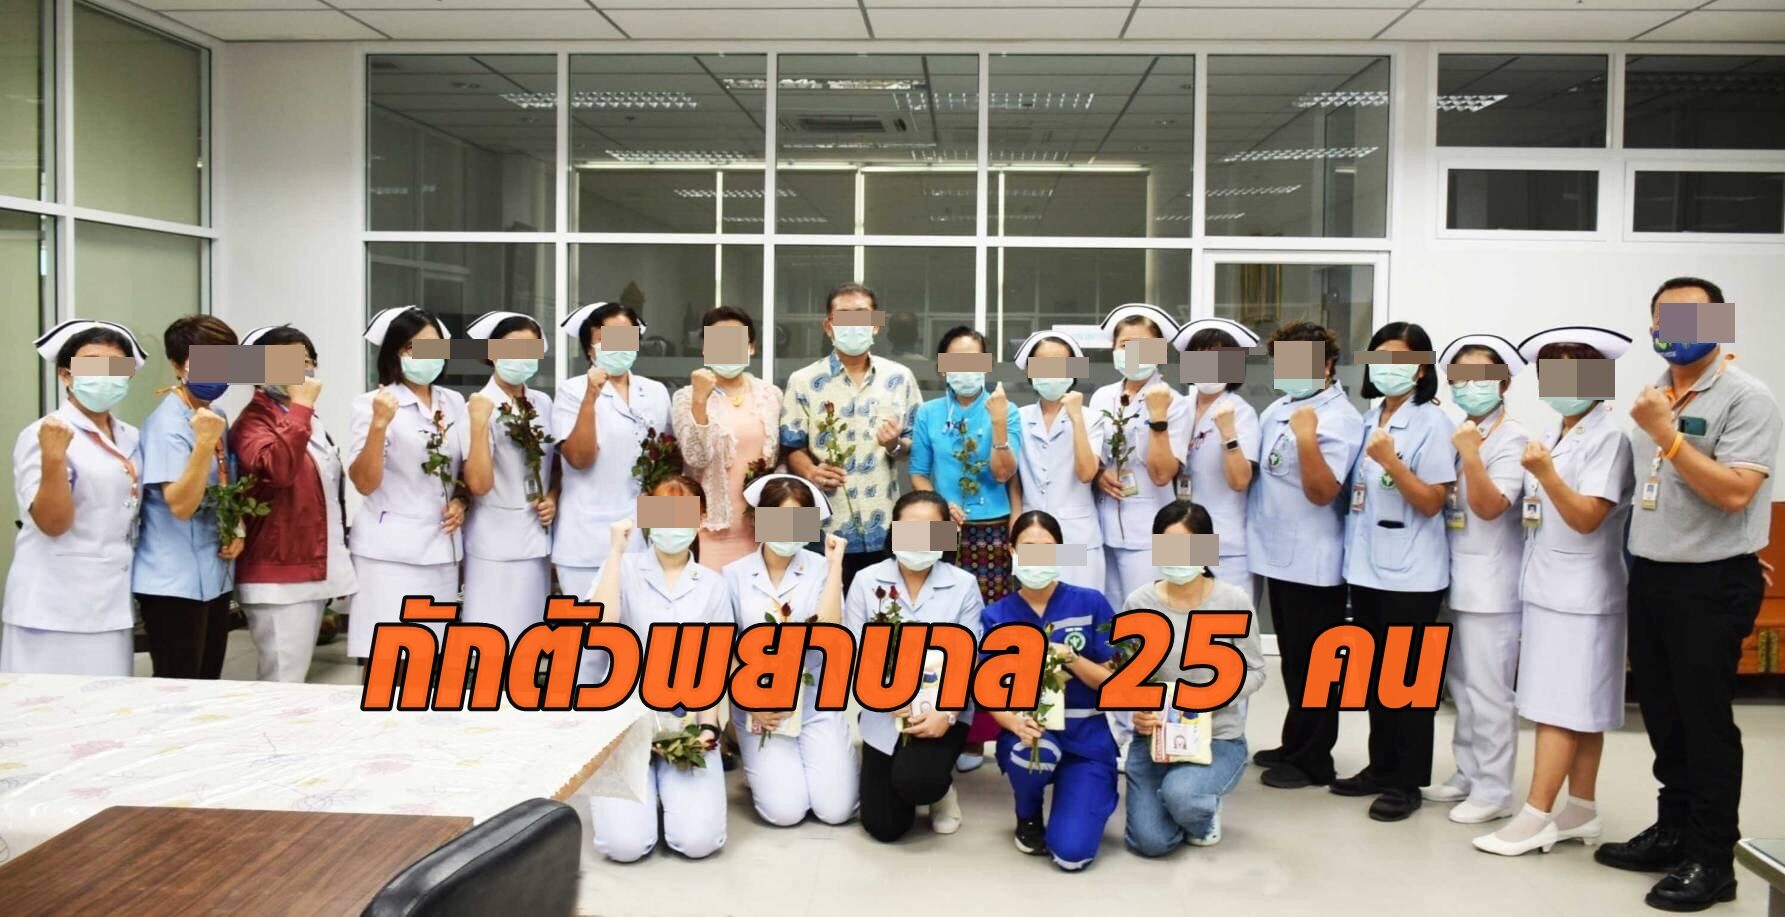 กักตัวพยาบาล ร.พ.แม่สอด 25 คน หลังพบ 1 คนติดเชื้อโควิด-19